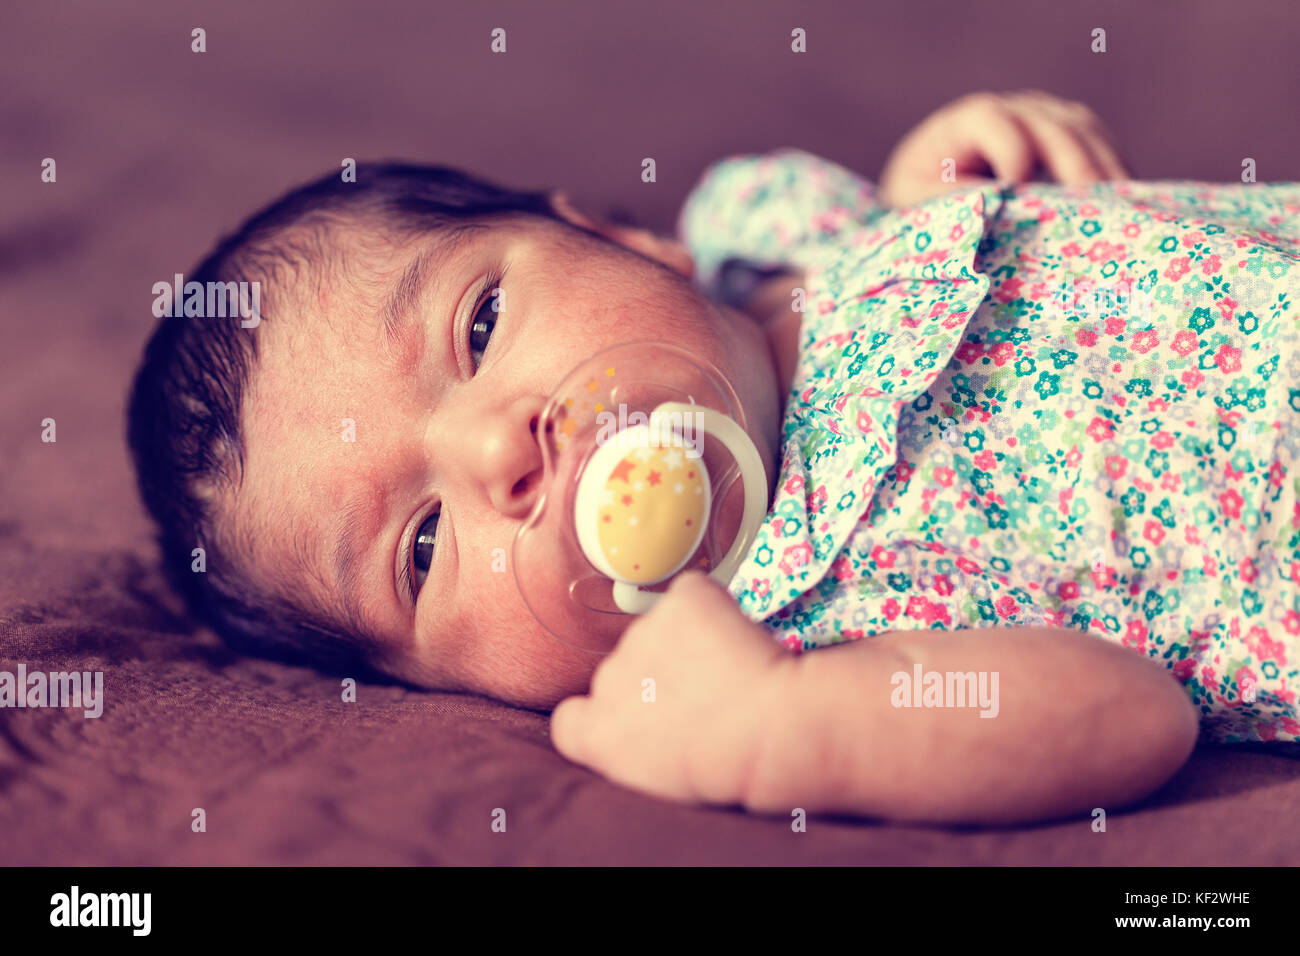 Portrait d'une deux semaines Naissance bebe Fille couchée avec une sucette ou dummy, looking at camera avec une robe à fleurs / sucette nouveau-né dummy Banque D'Images